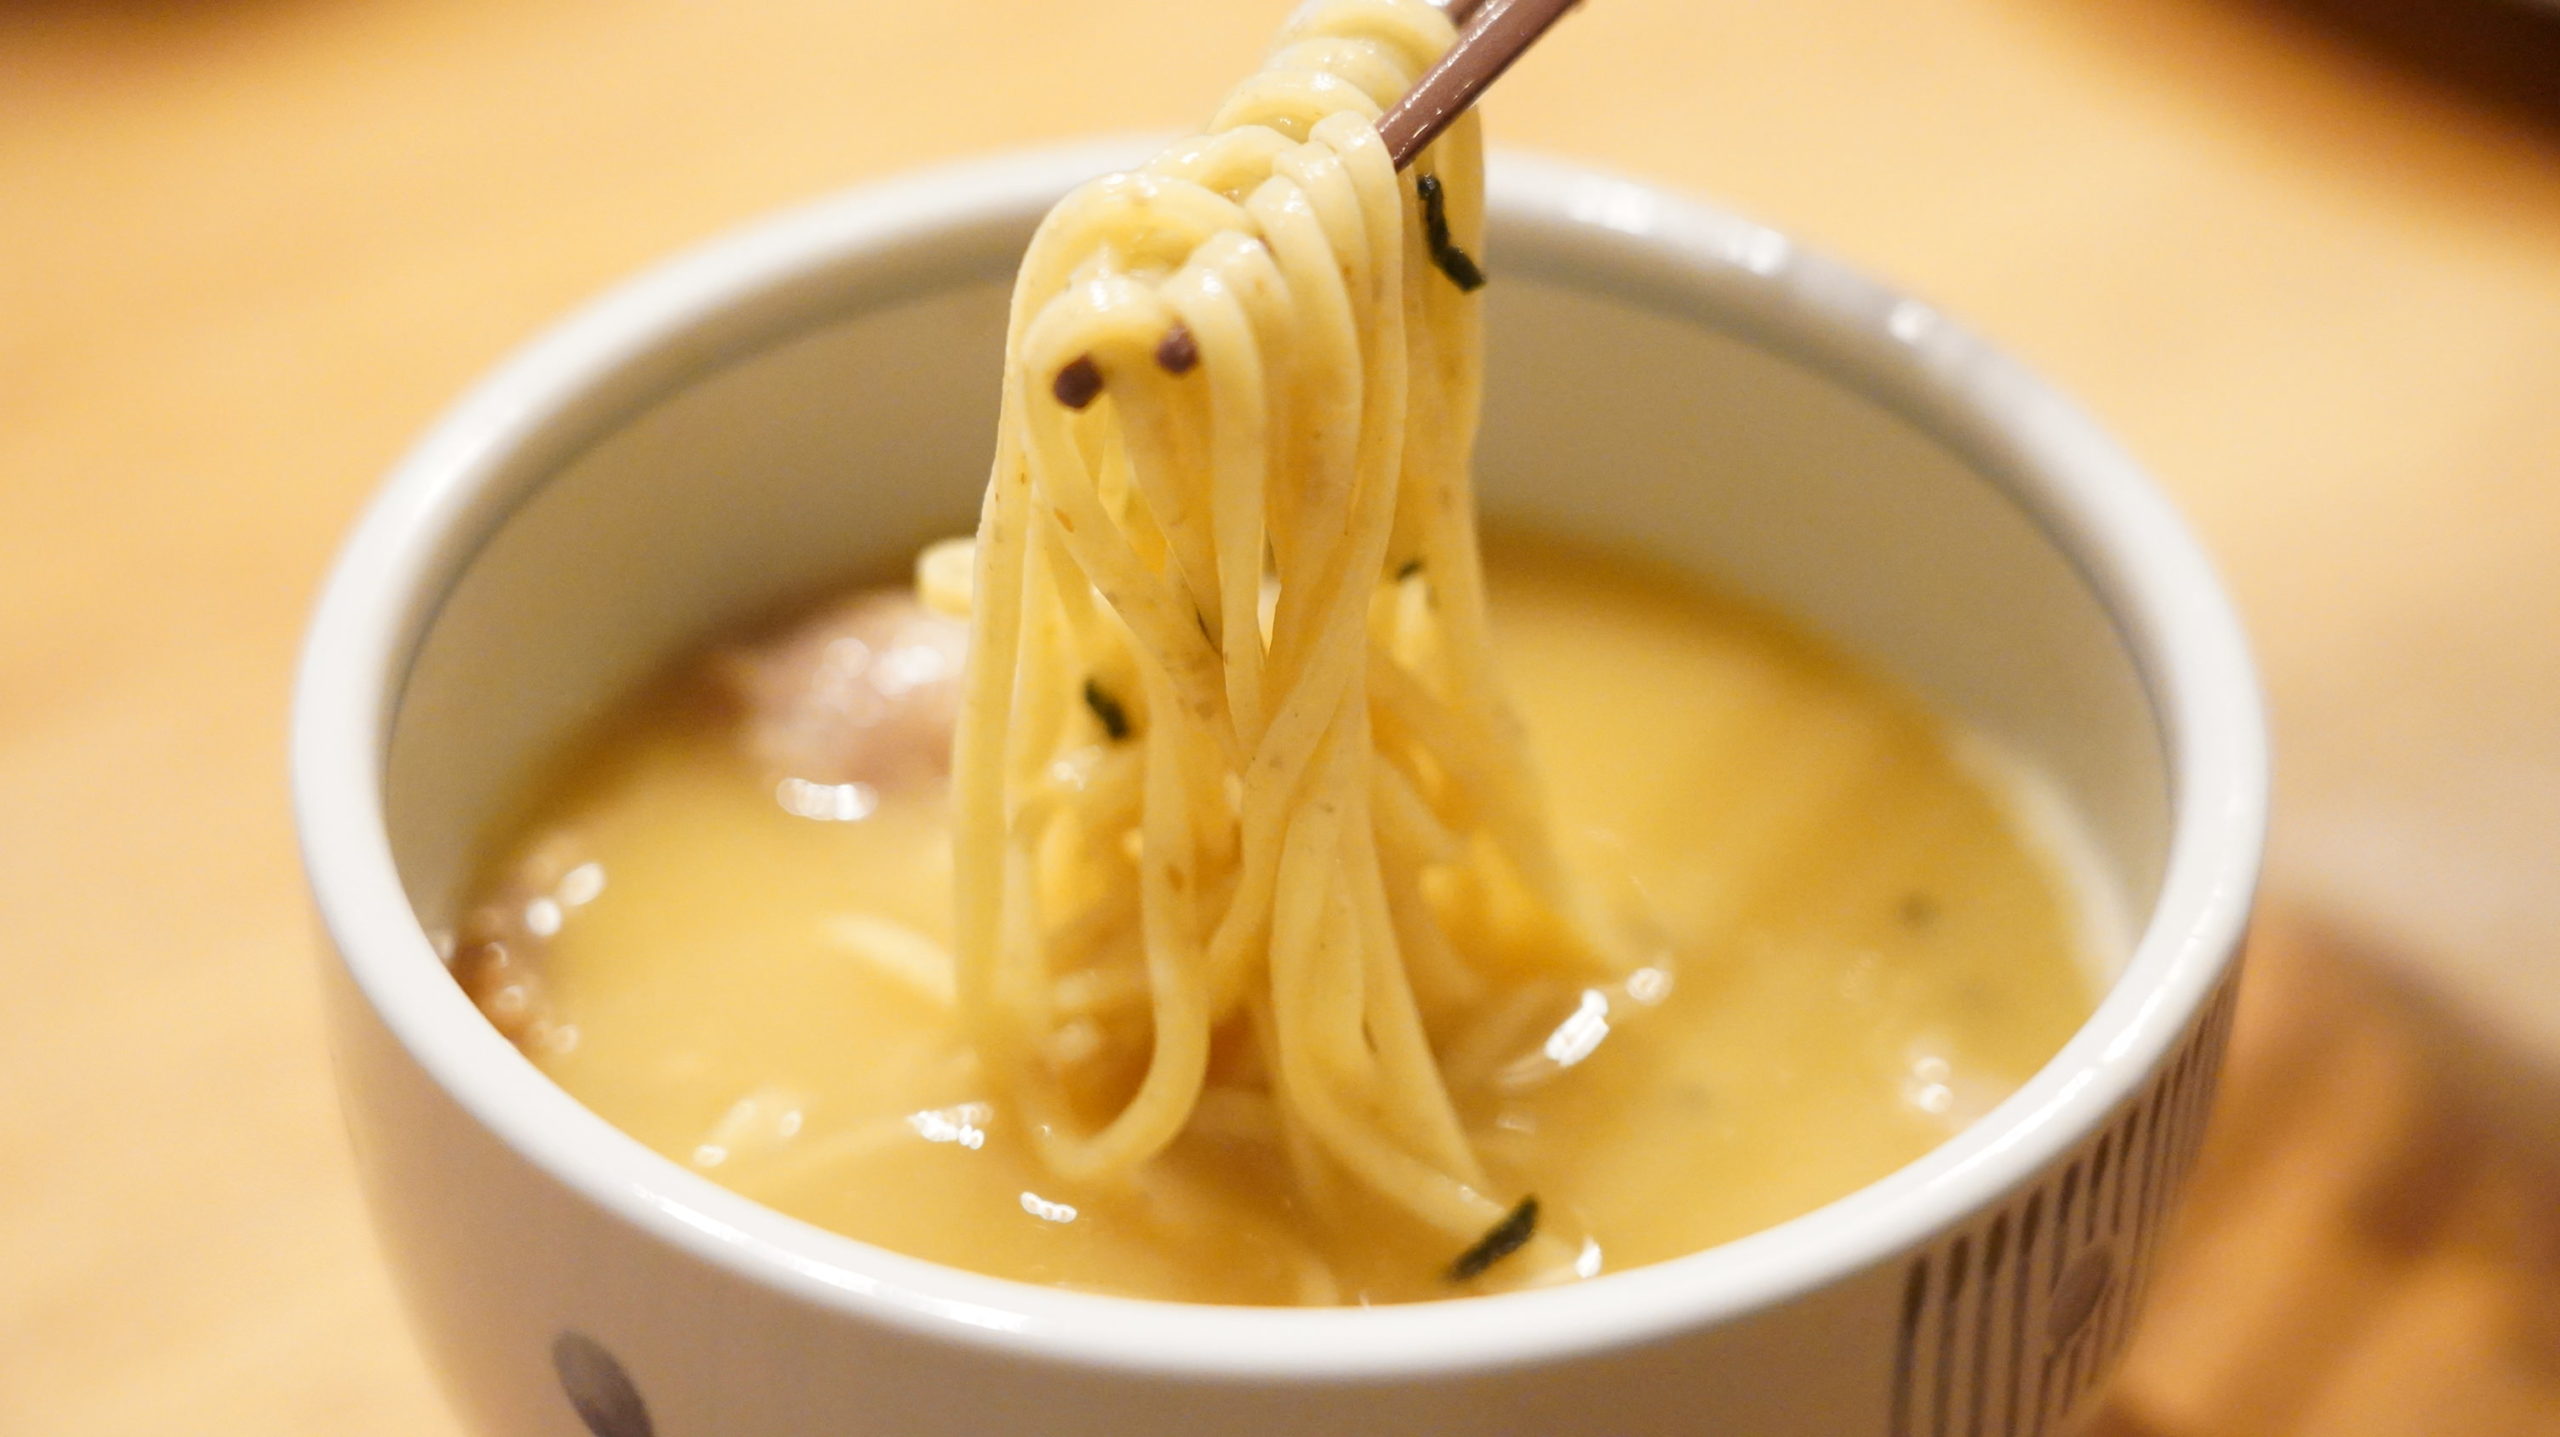 「ラーメンにっこう」のお取り寄せオンライン通販「柚子白湯つけ麺」の麺を箸でつまんでいる写真